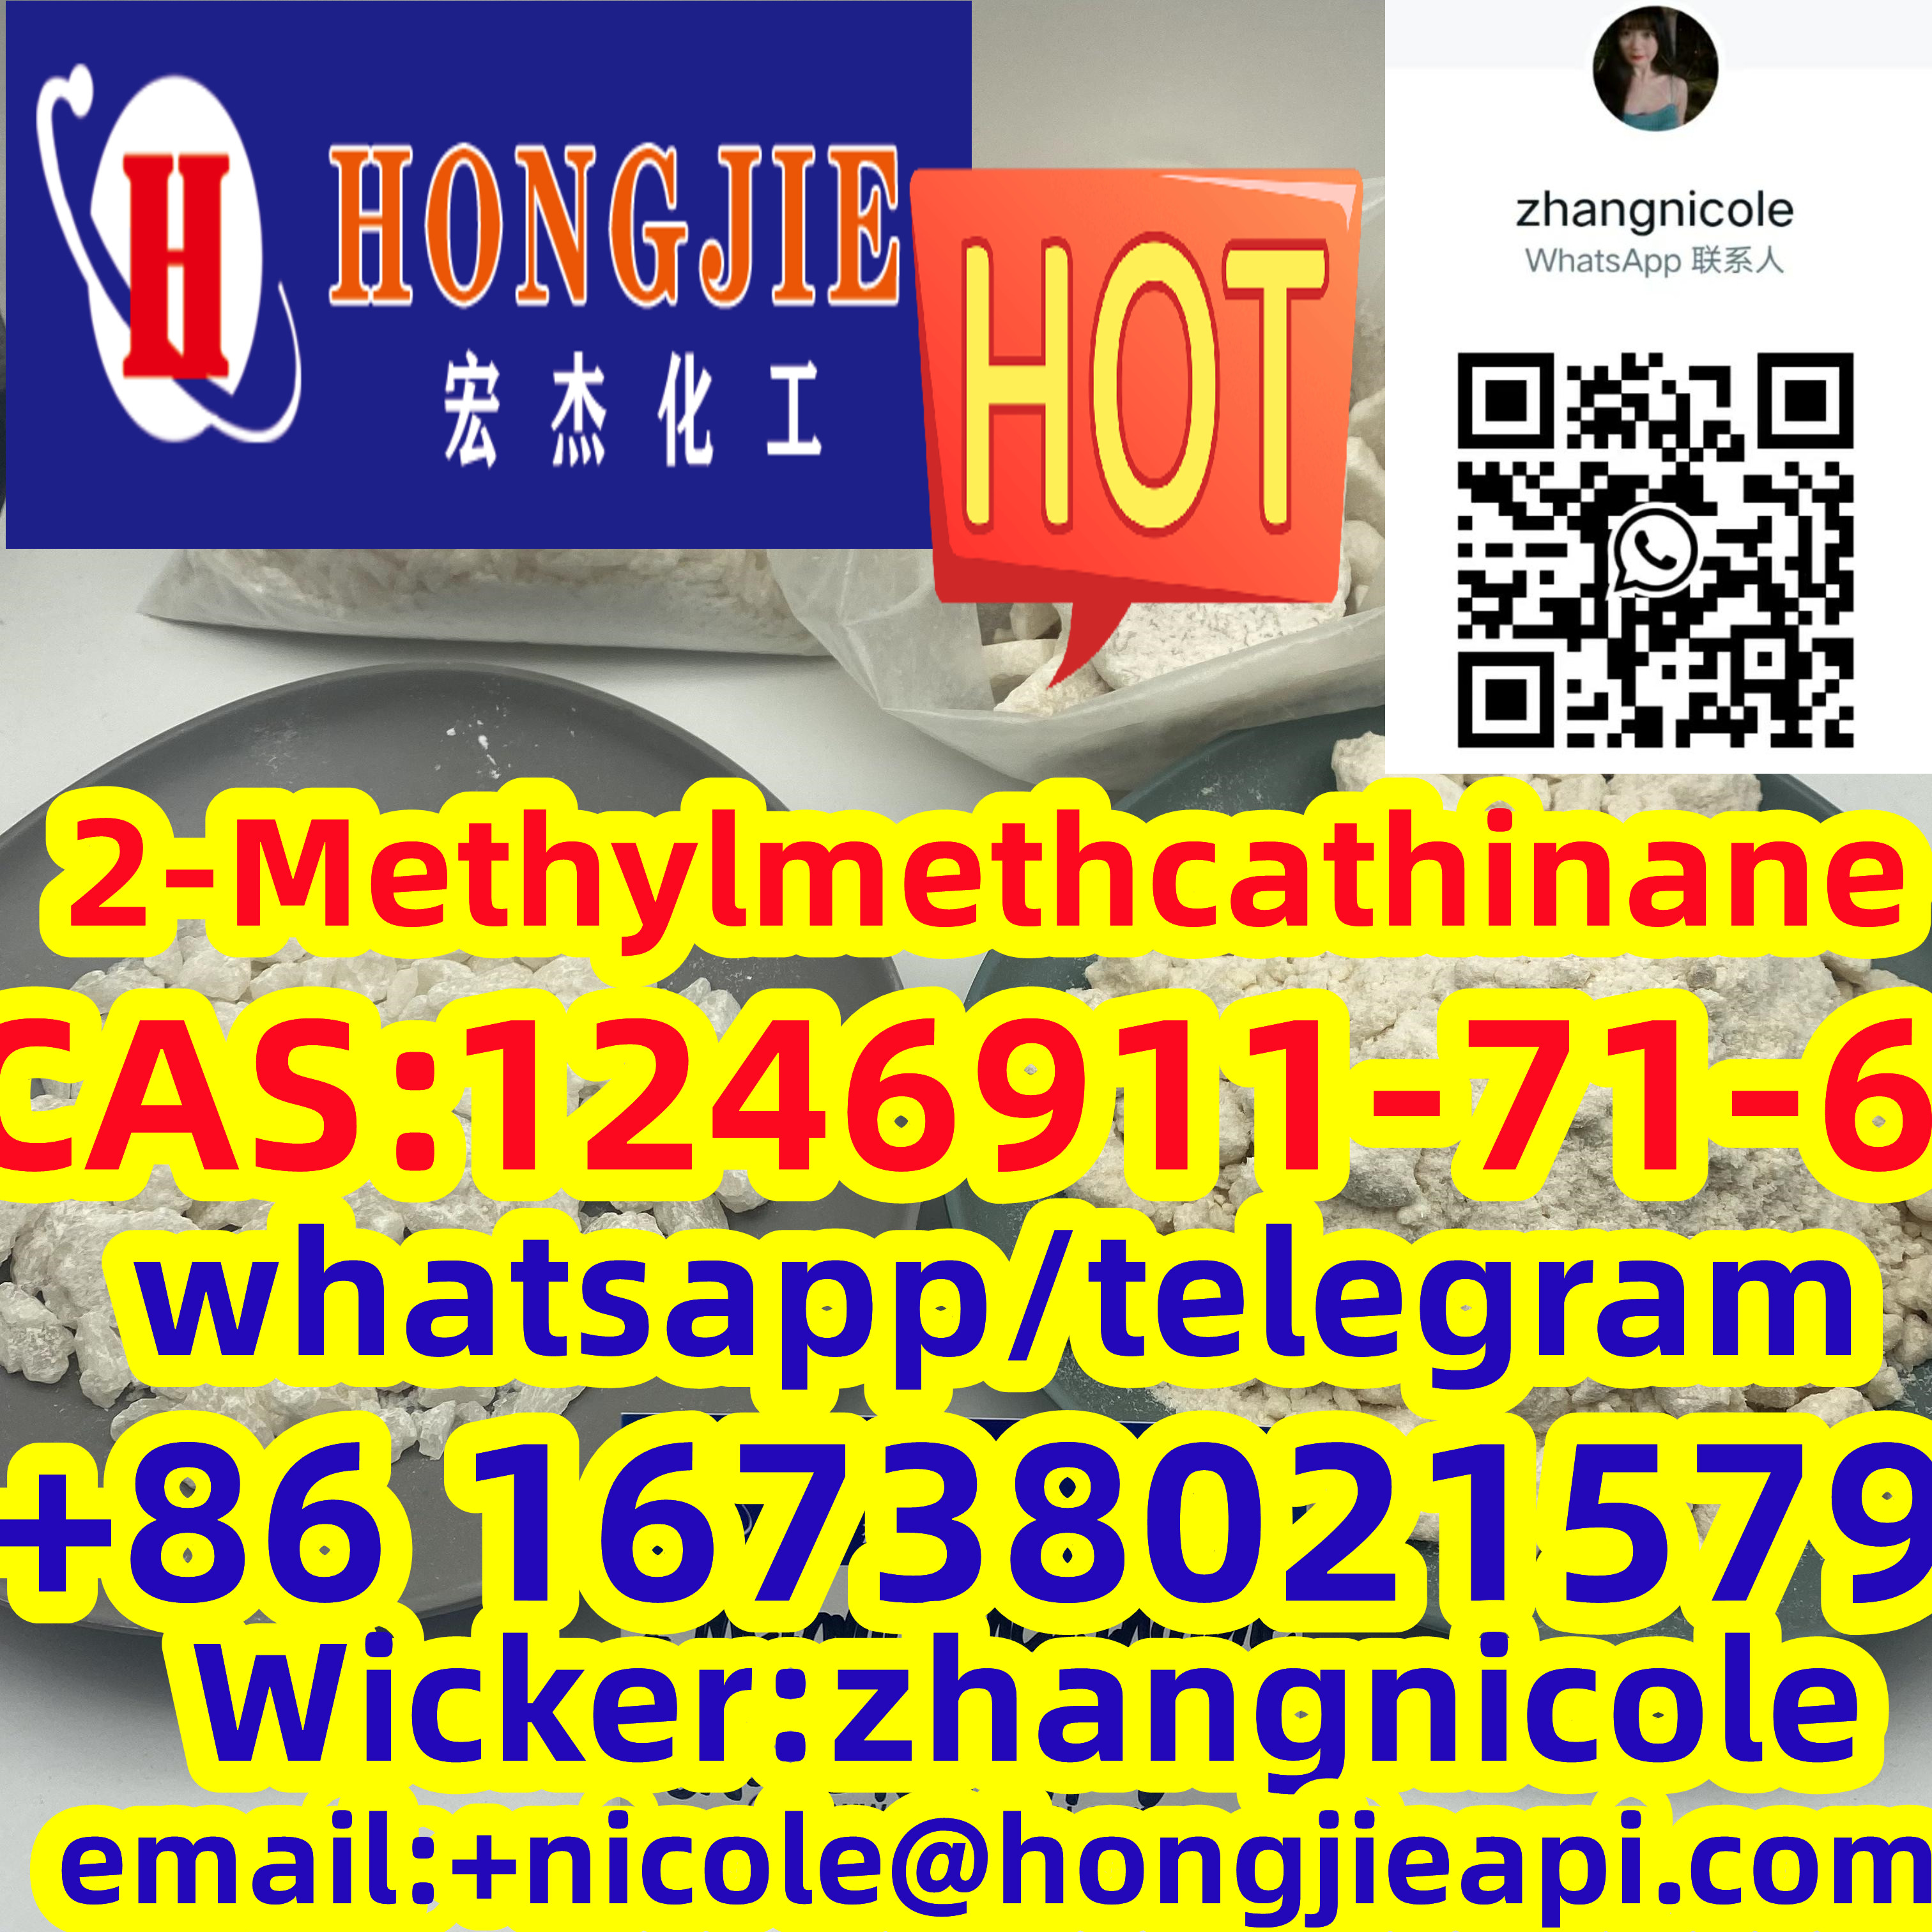 Low price 2-Methylmethcathinane CAS:1246911-71-6